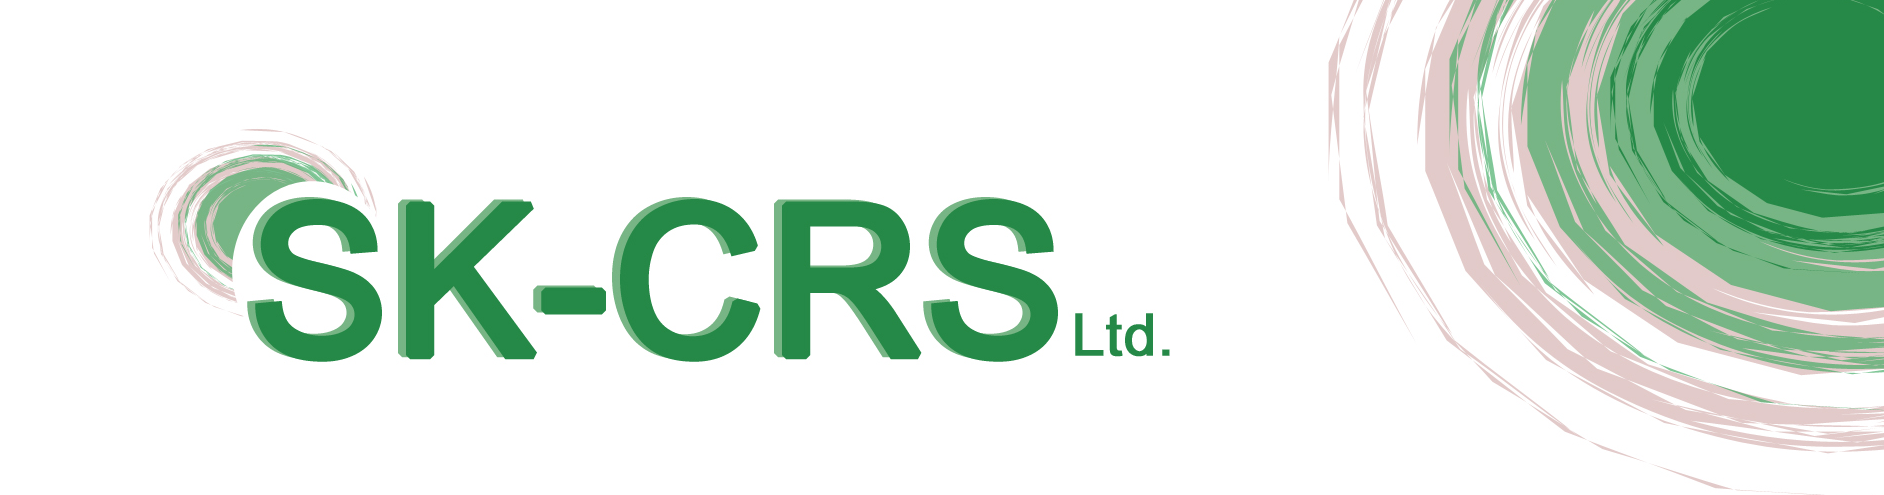 SK-CRS ltd logo